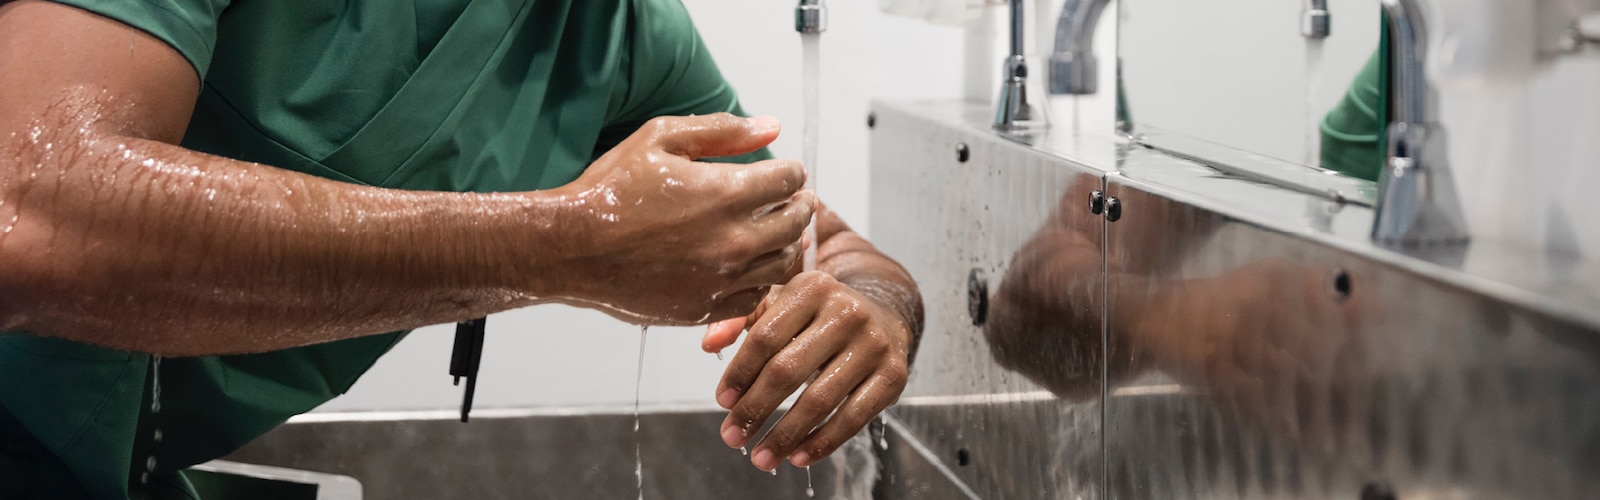 Ein Arzt wäscht seine Hände vor einem Eingriff